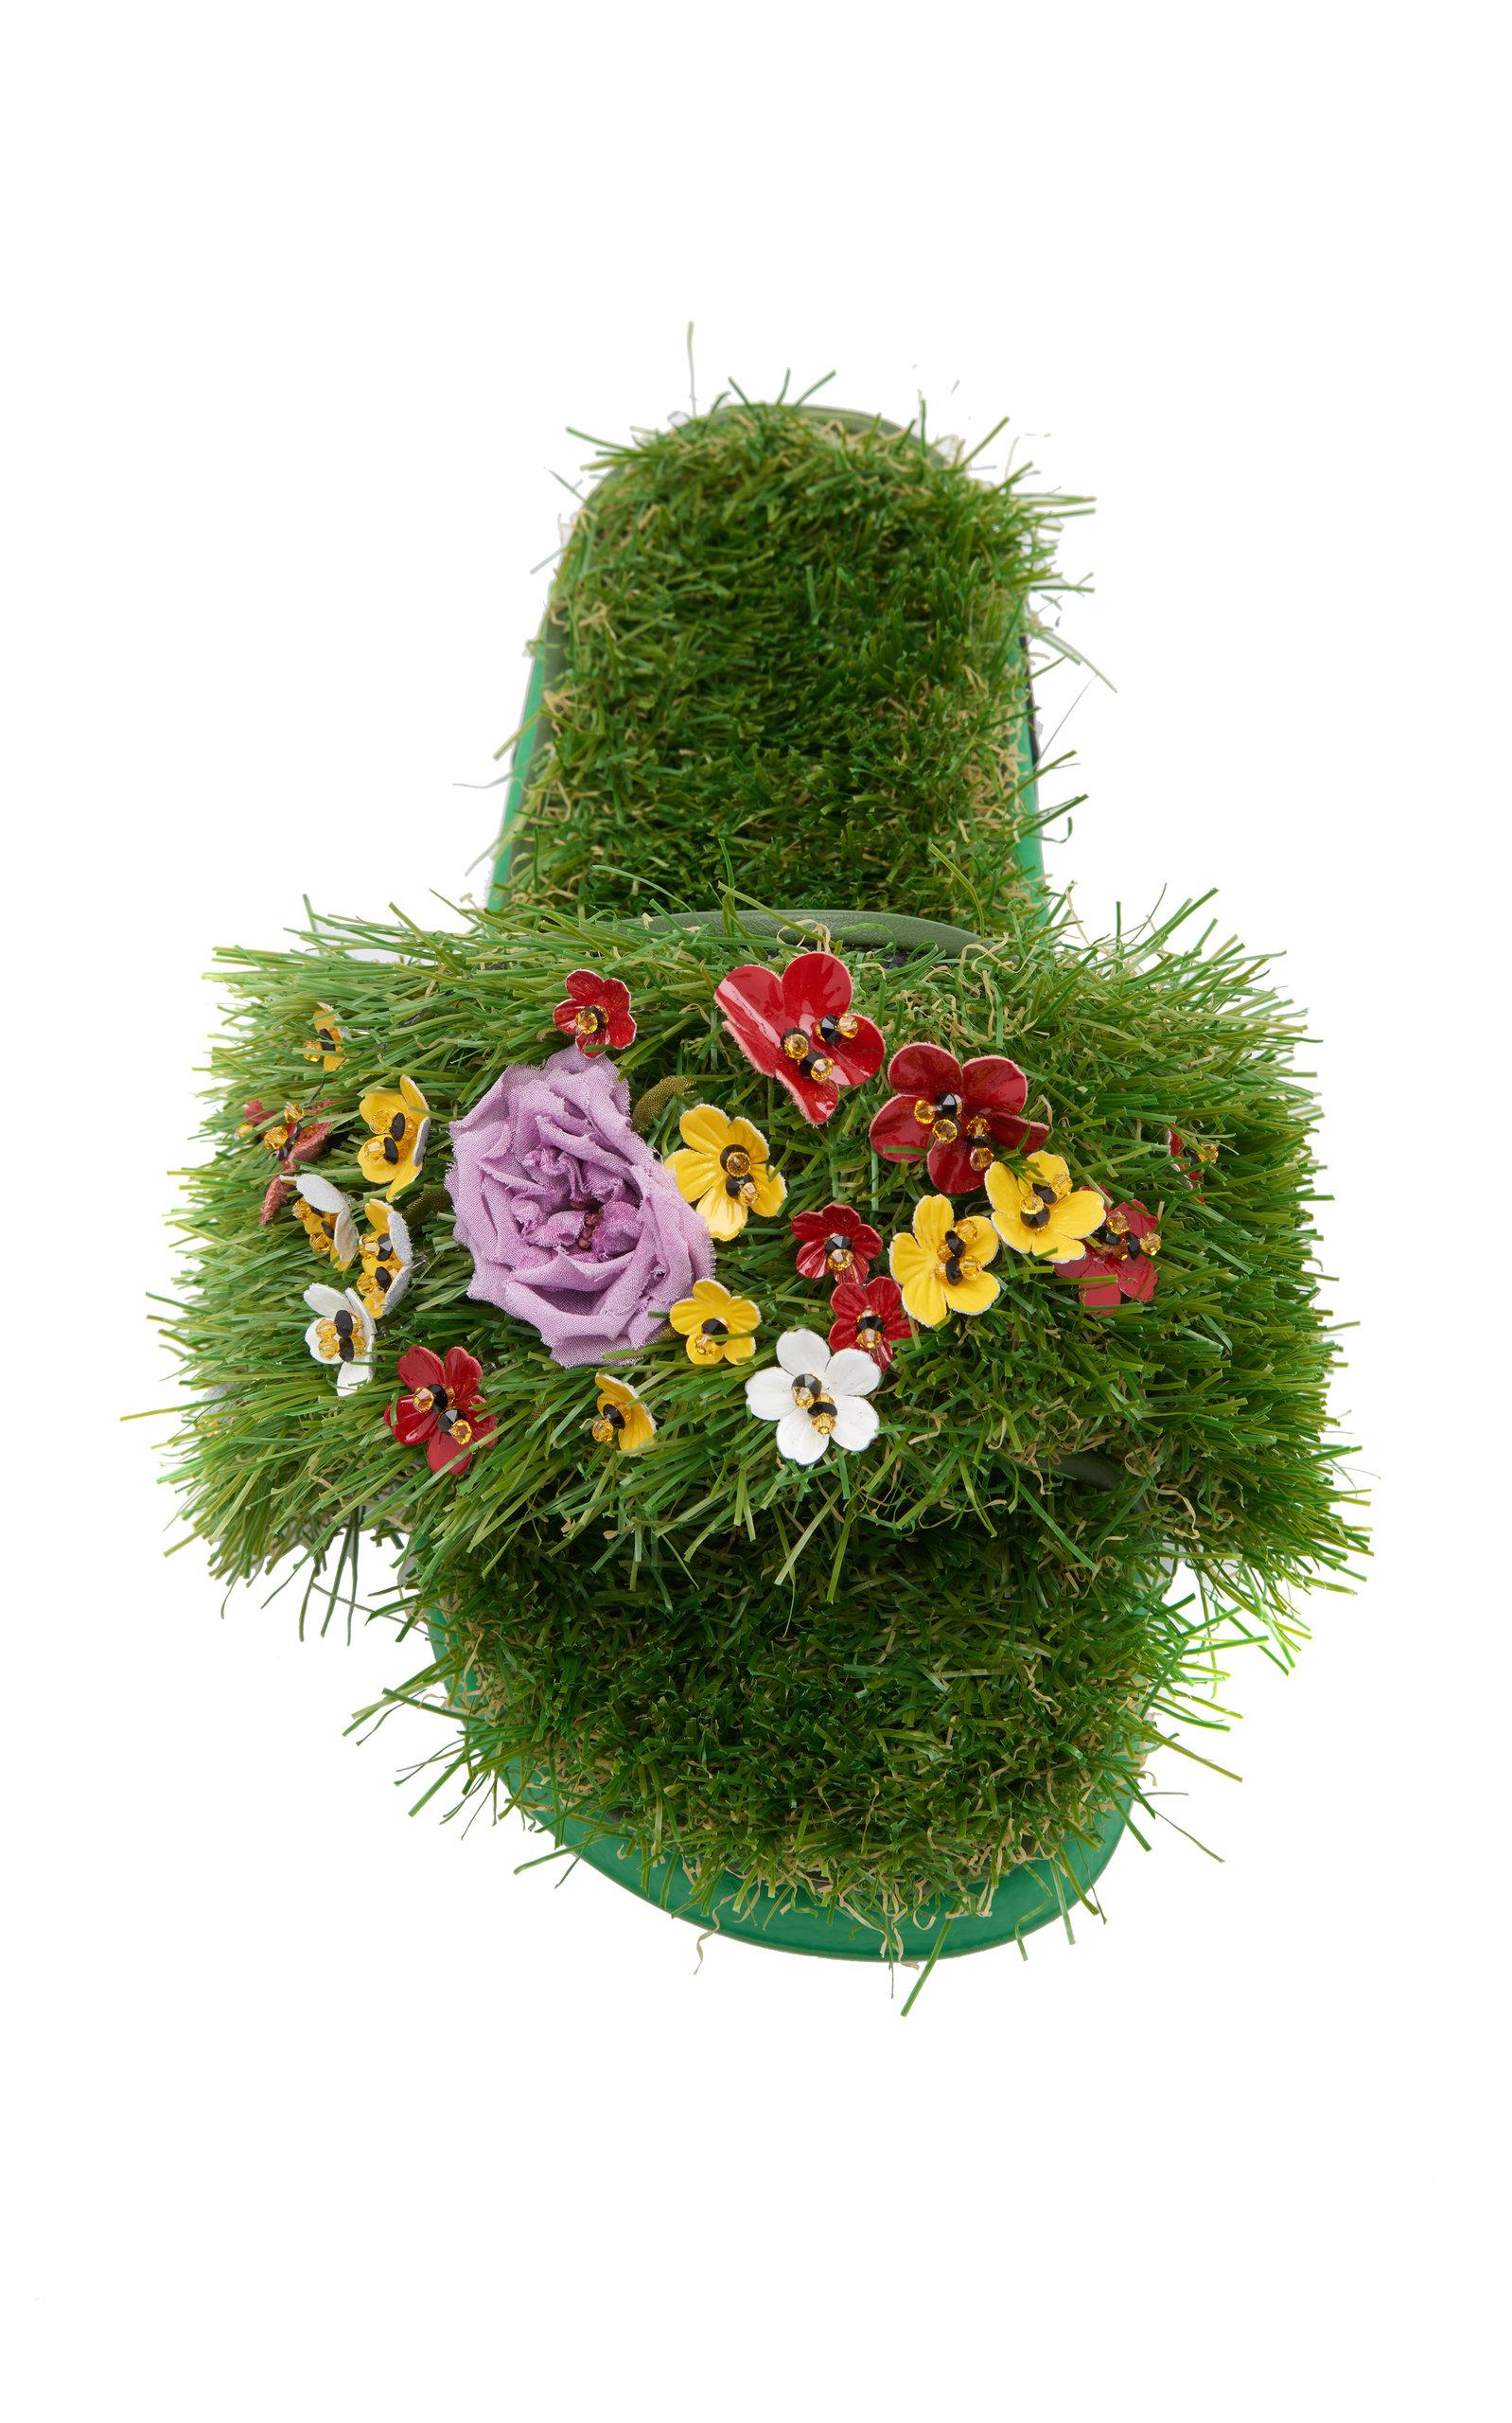 Dolce & Gabbana Floral Embellished Slides in Green | Lyst